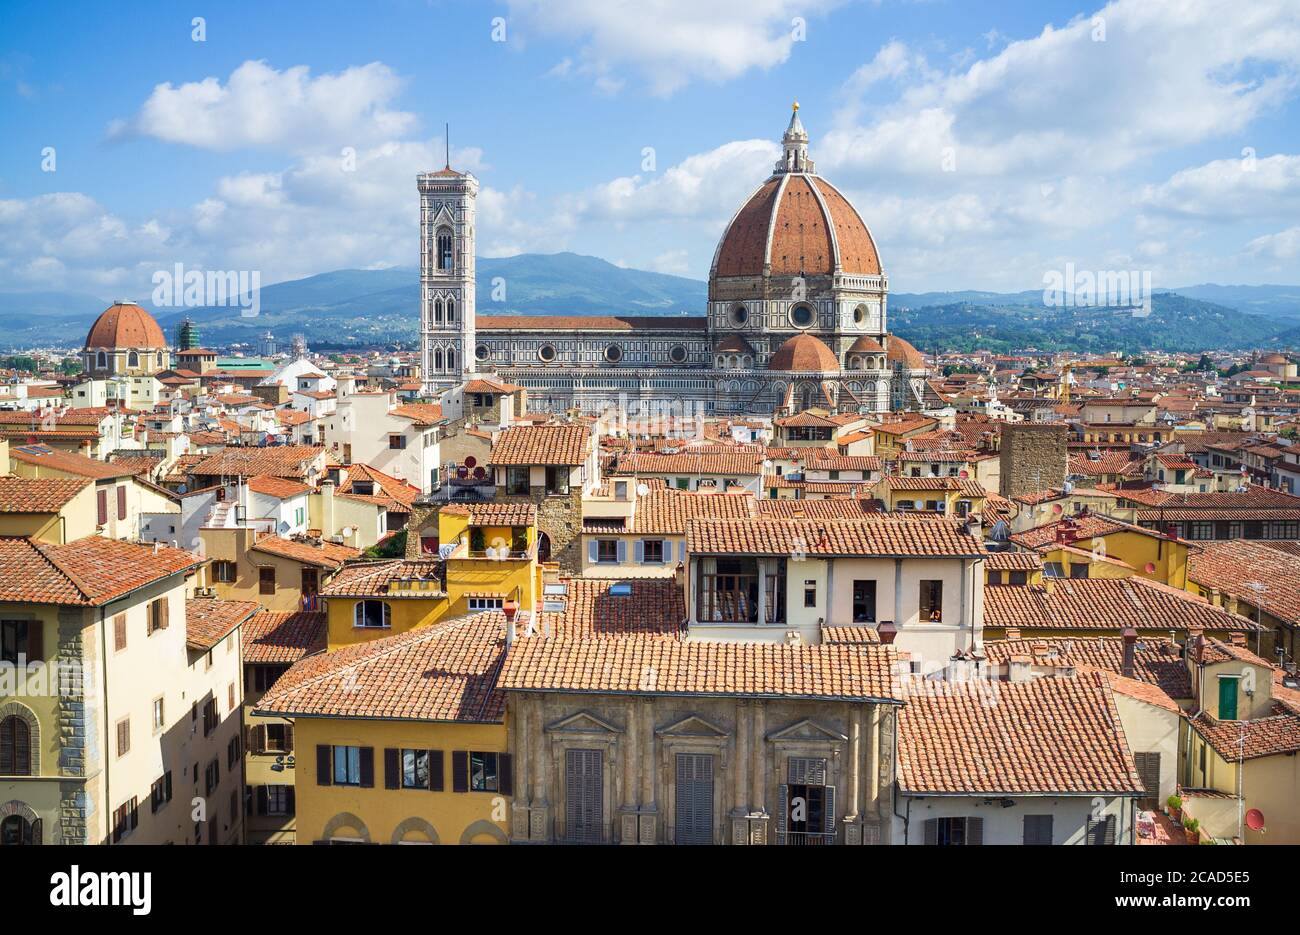 El horizonte de Florencia en la Toscana está dominado por la impresionante arquitectura renacentista de la cúpula del Duomo y el Campanile de Giotto Foto de stock